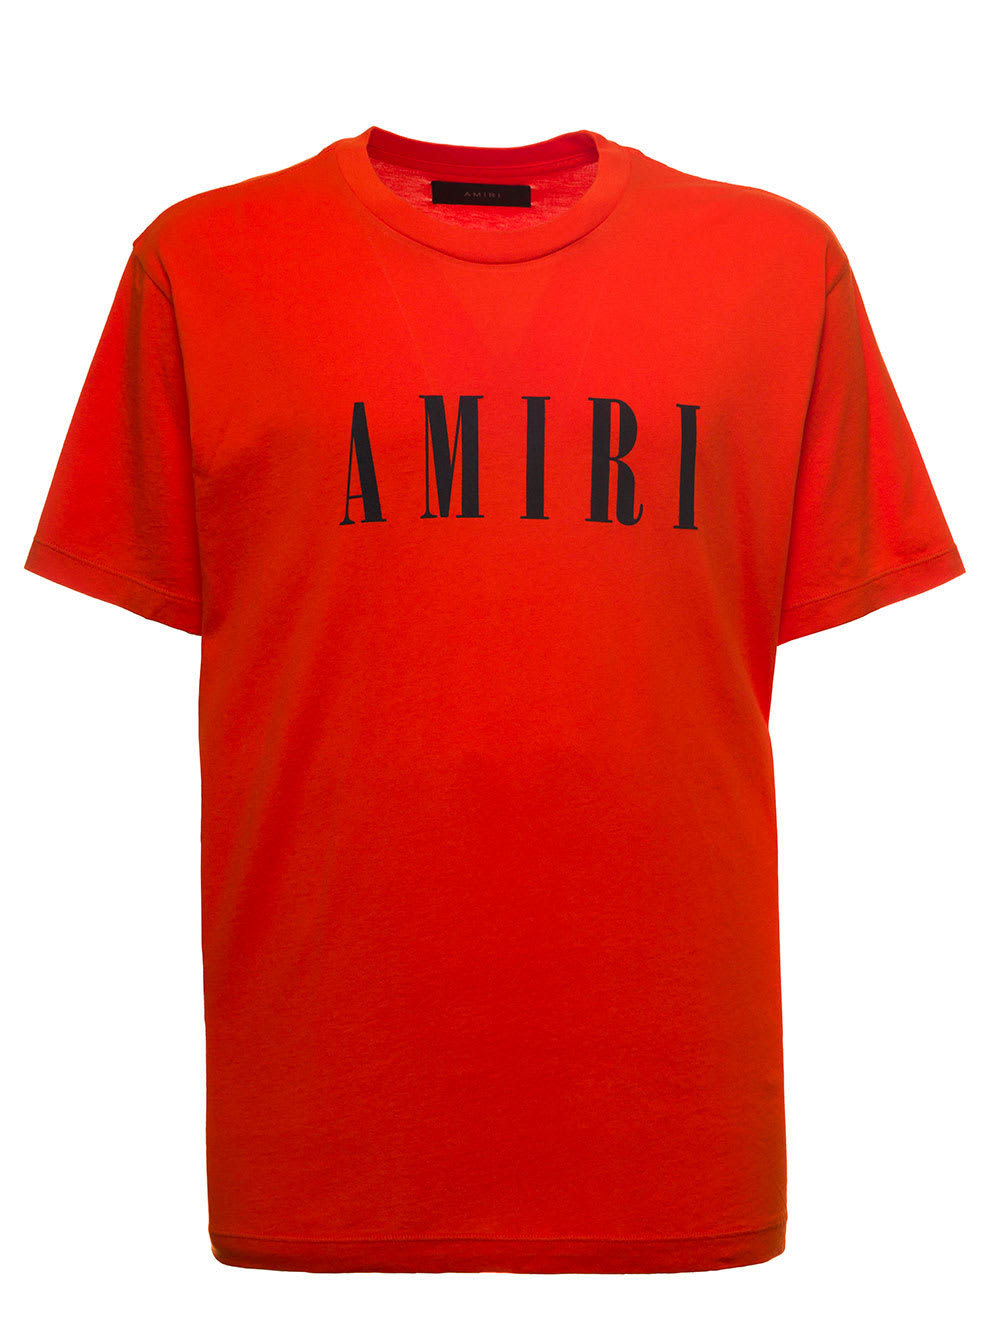 AMIRI T-Shirts for Men | ModeSens